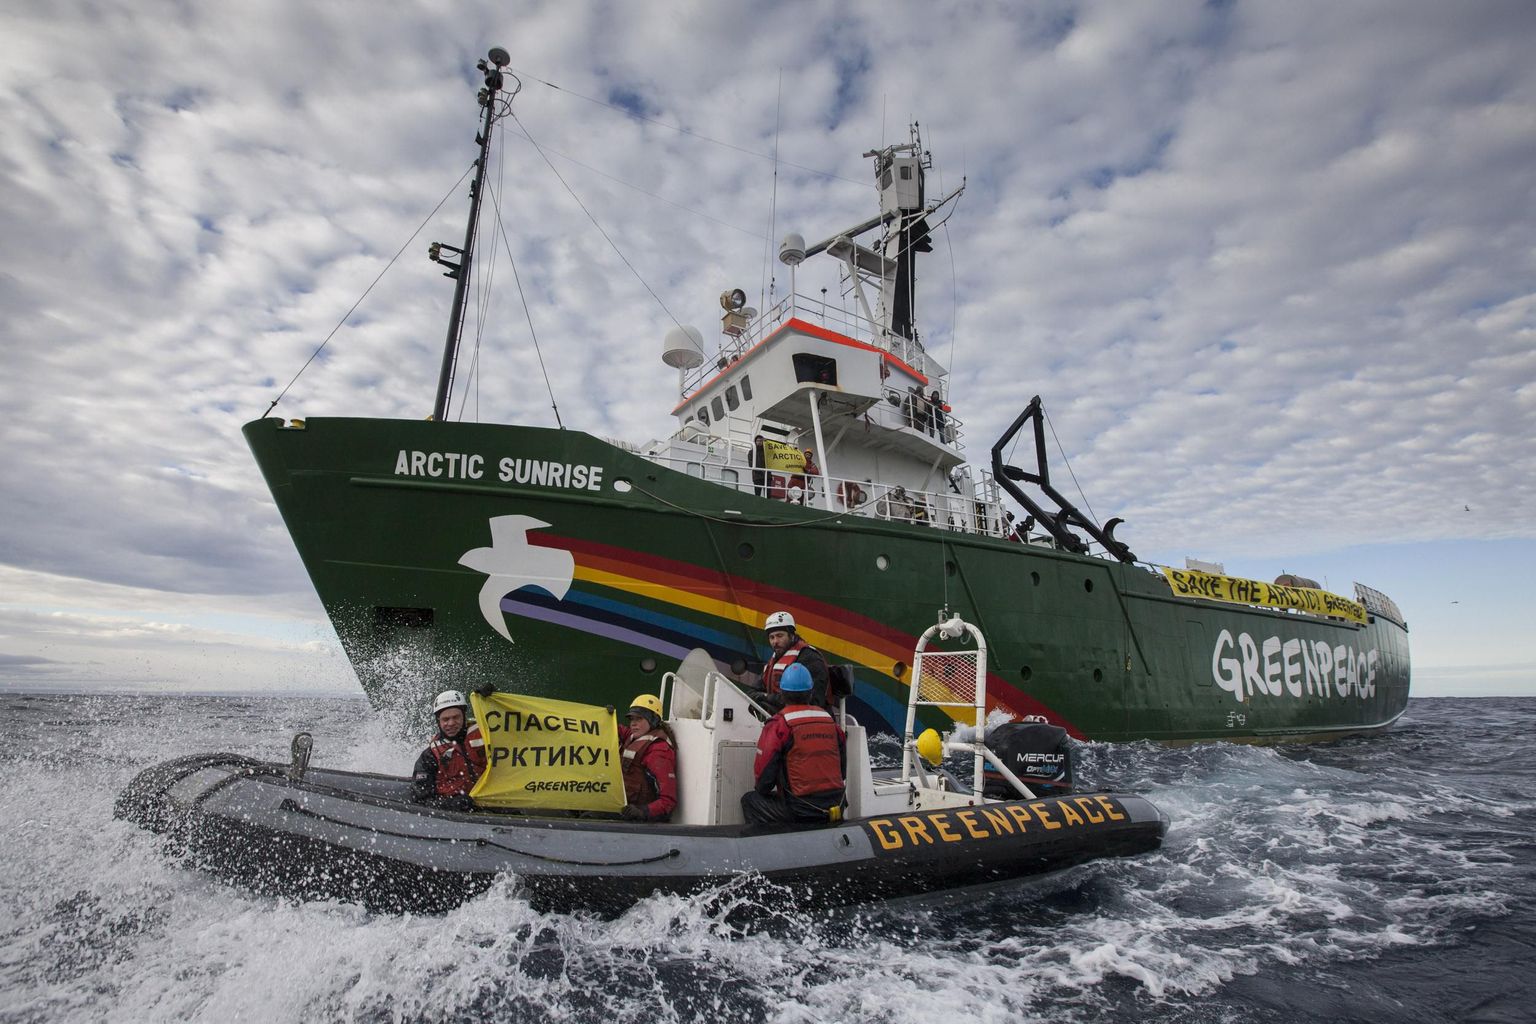 Keskkonnaorganisatsiooni Greenpeace laev Arctic Sunrise